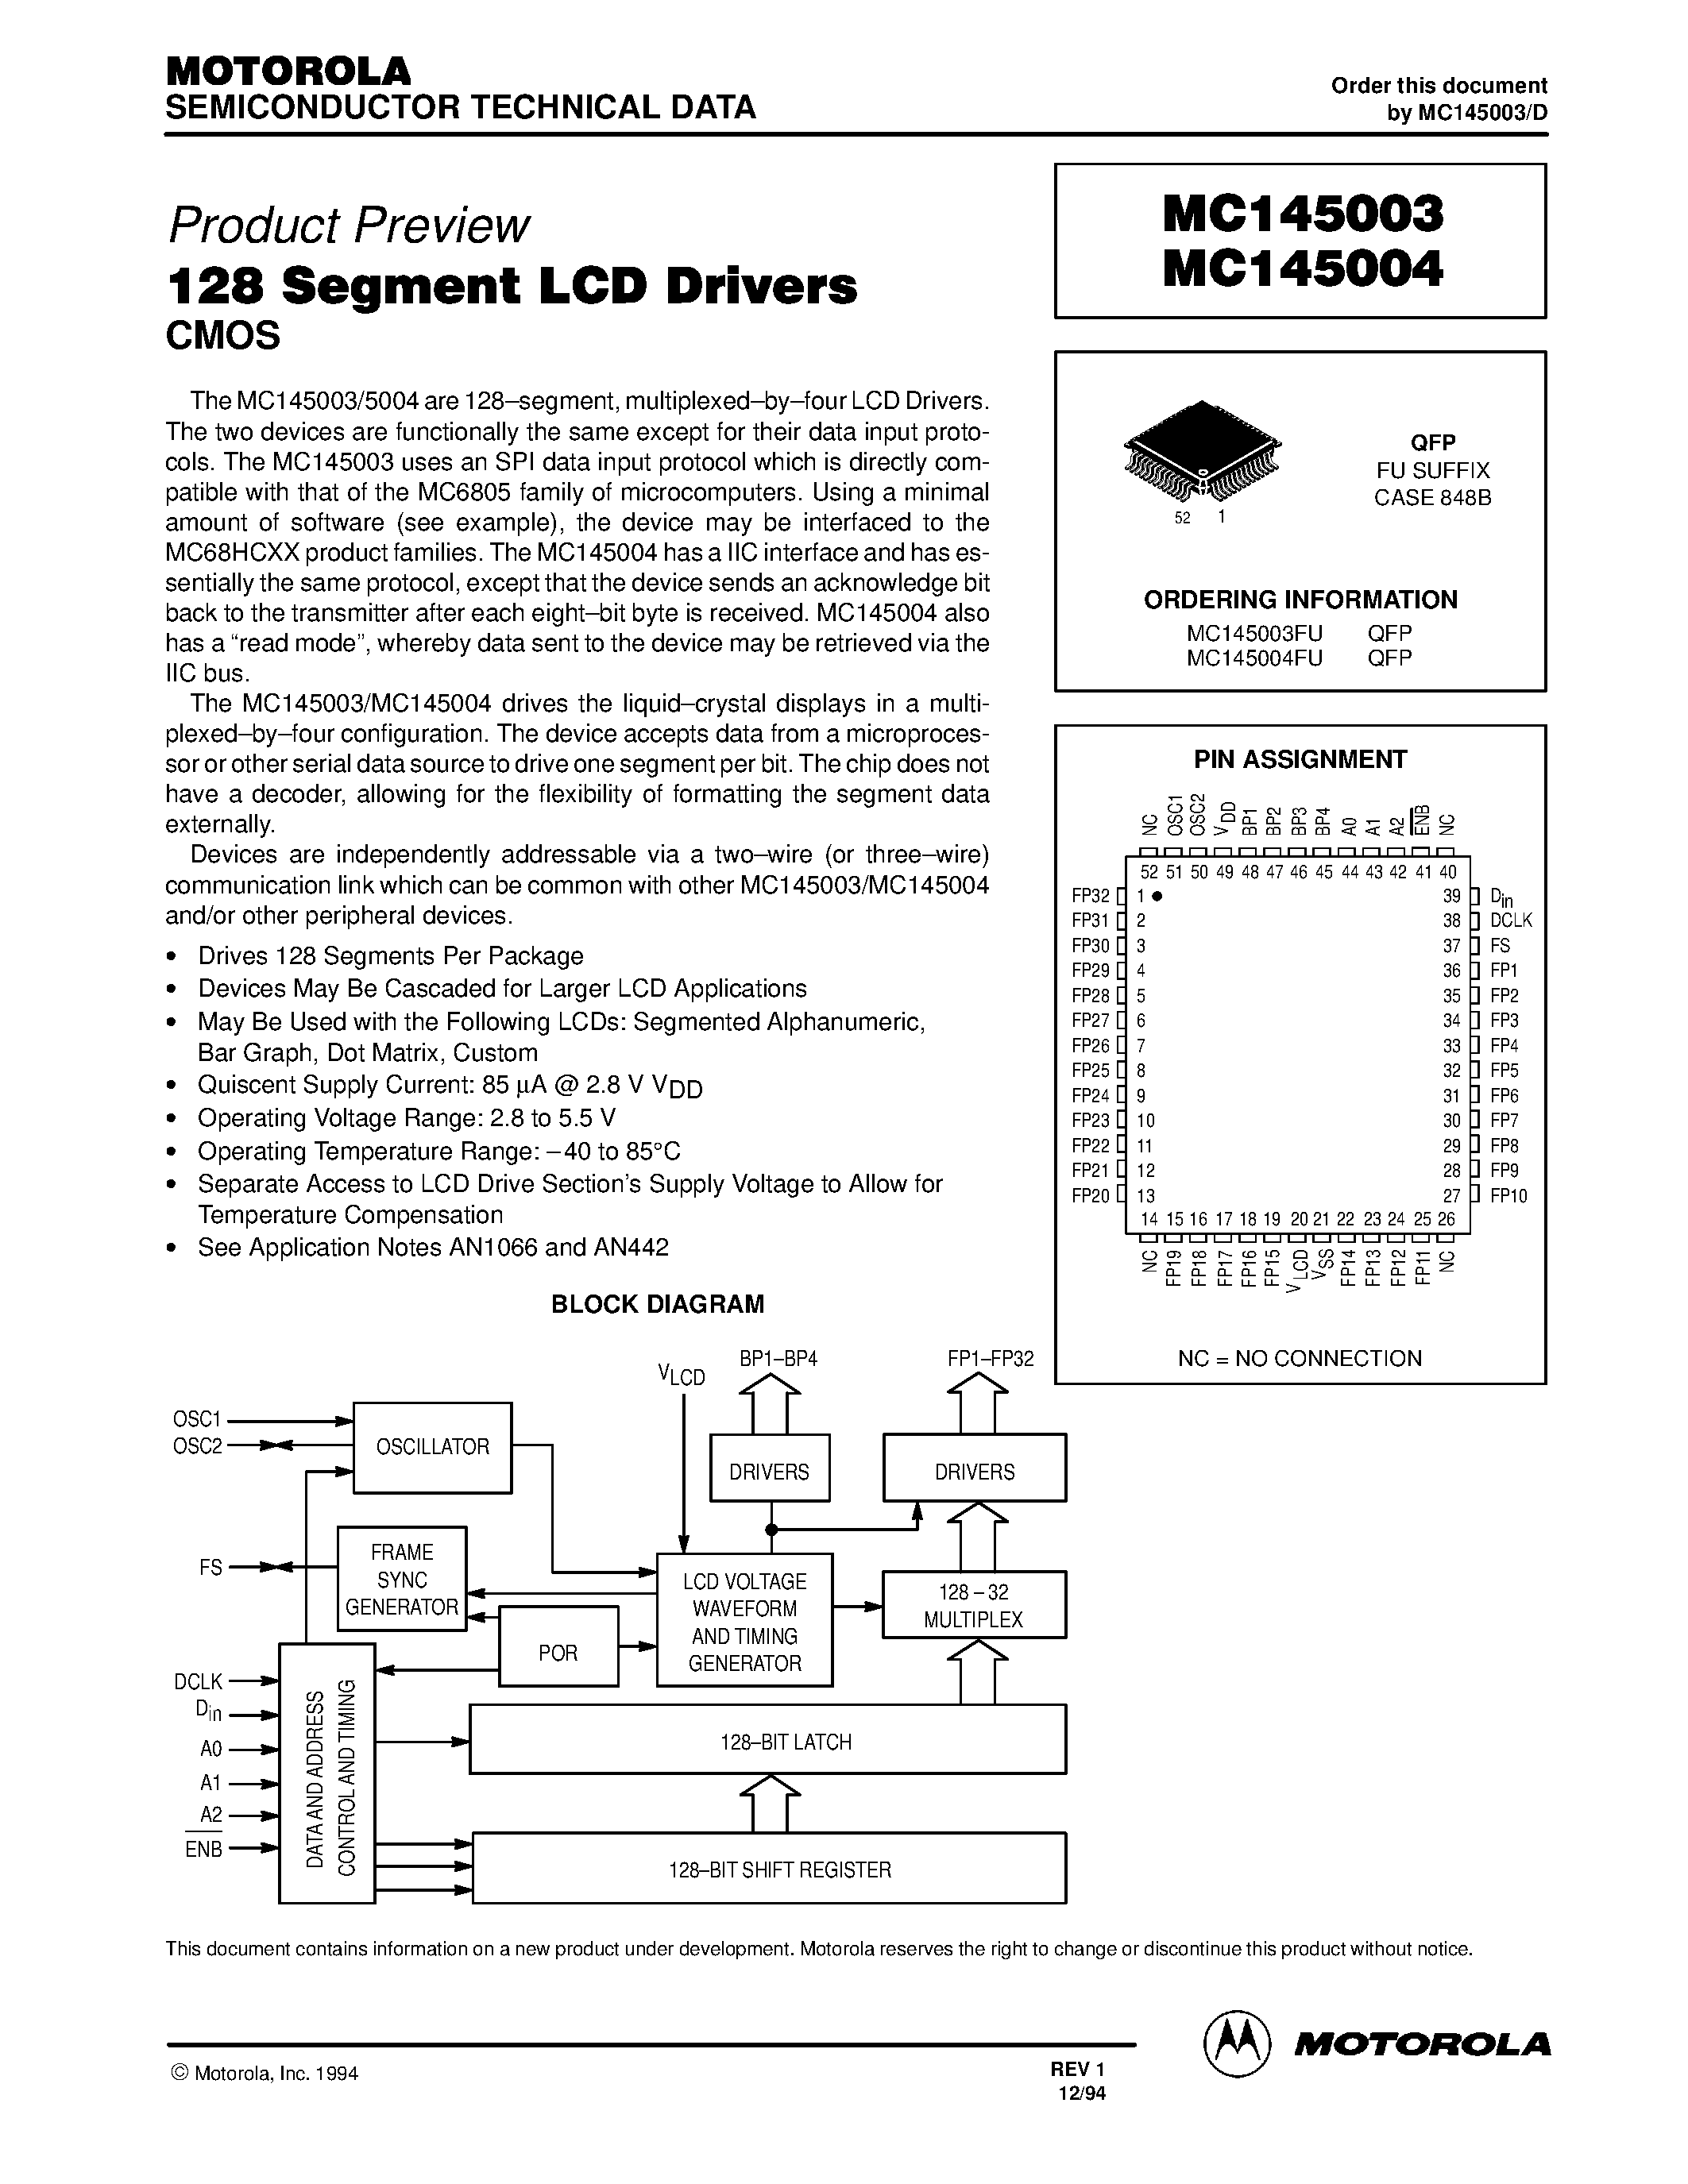 Datasheet MC145003 - (MC145003 / MC145004) 128 Segment LCD Drivers page 1